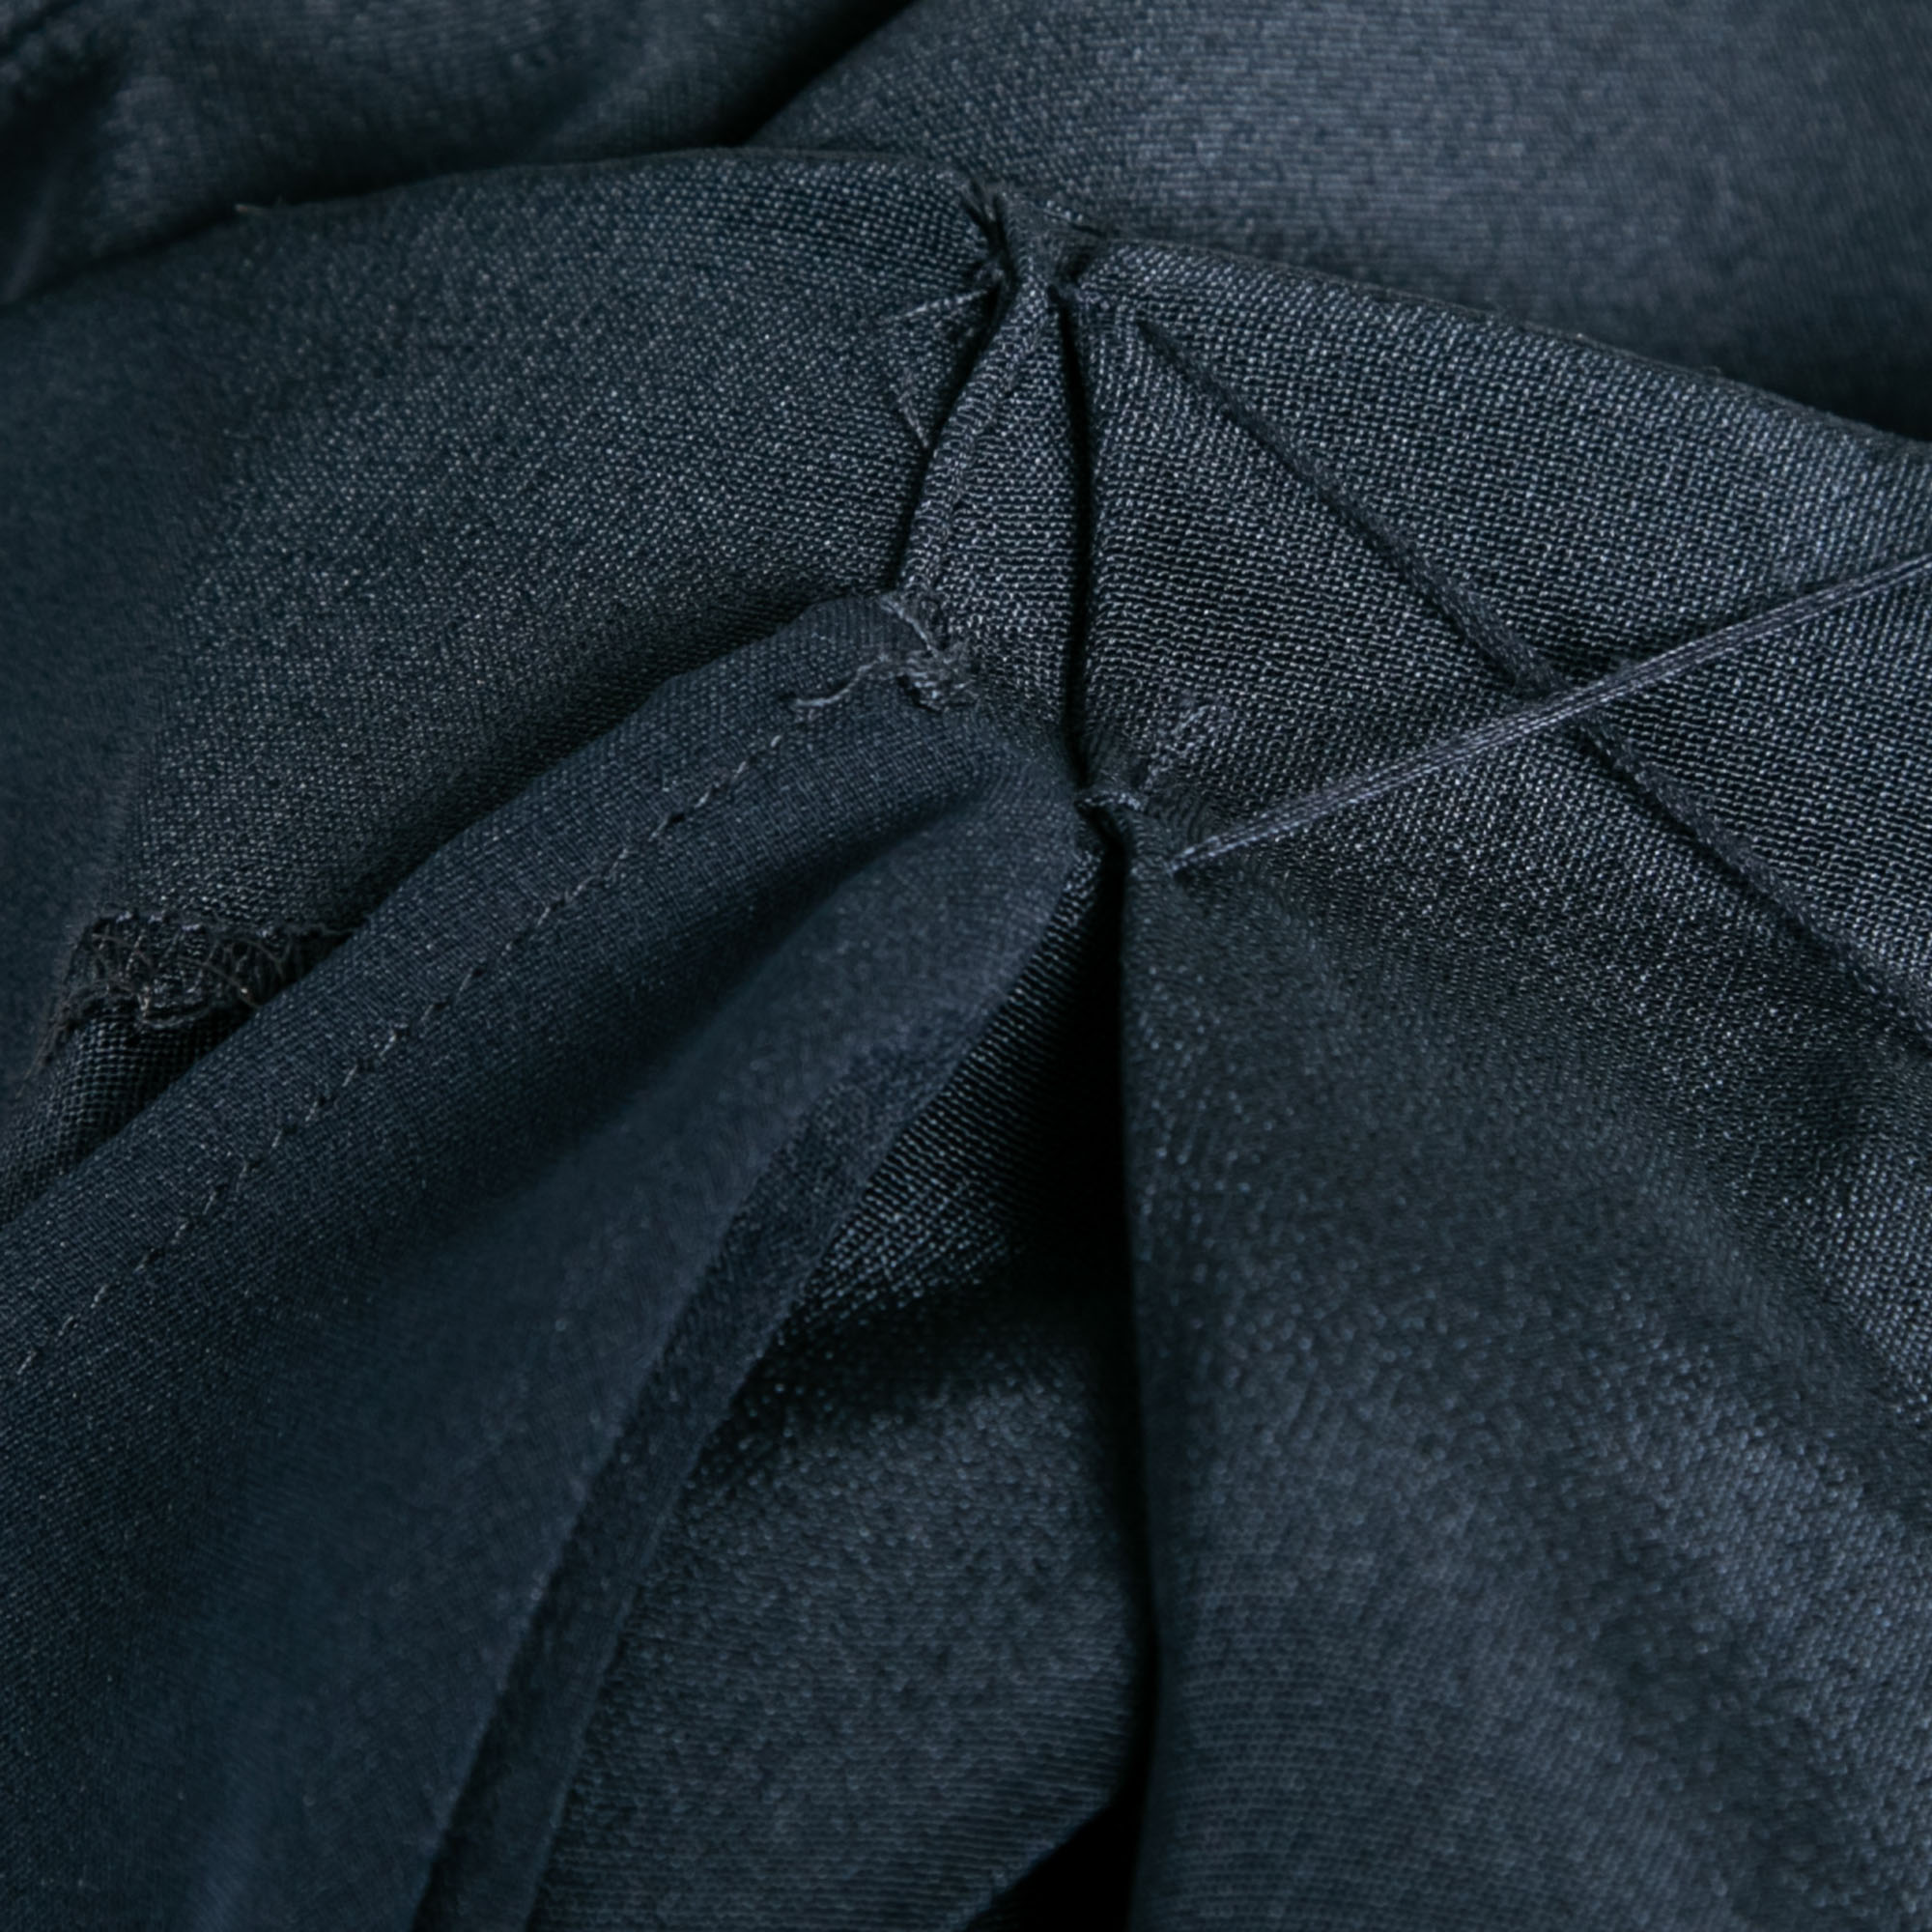 Theory Uniform Blue Silk Ruffled Overlay Landale B Dress XS